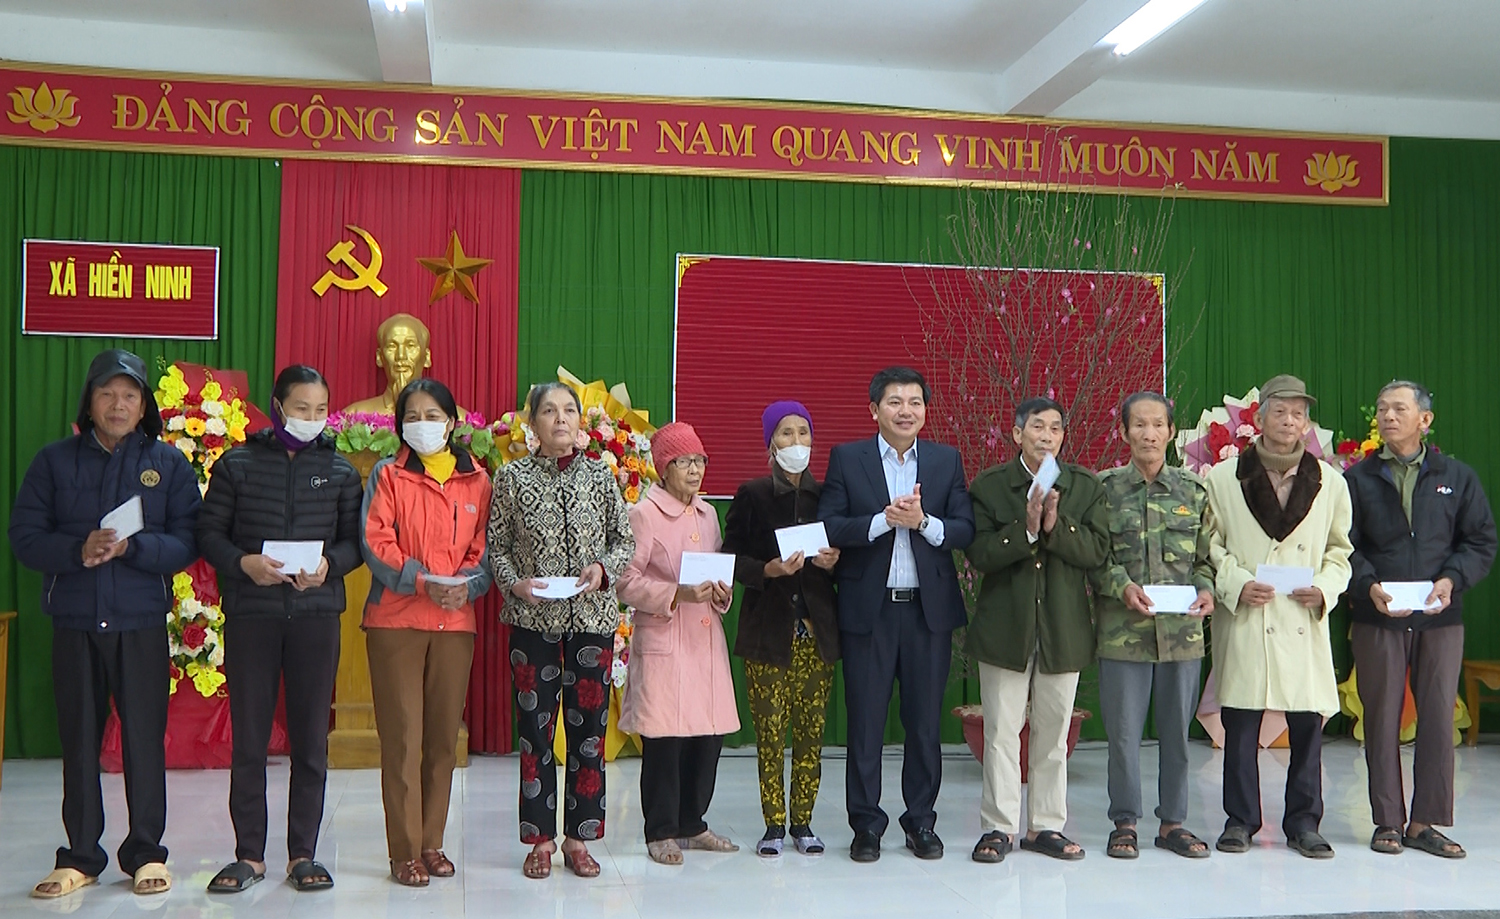 Đồng chí Trưởng ban Tổ chức Trung ương gửi tặng quà Tết cho gia đình chính sách, hộ nghèo xã Hiền Ninh